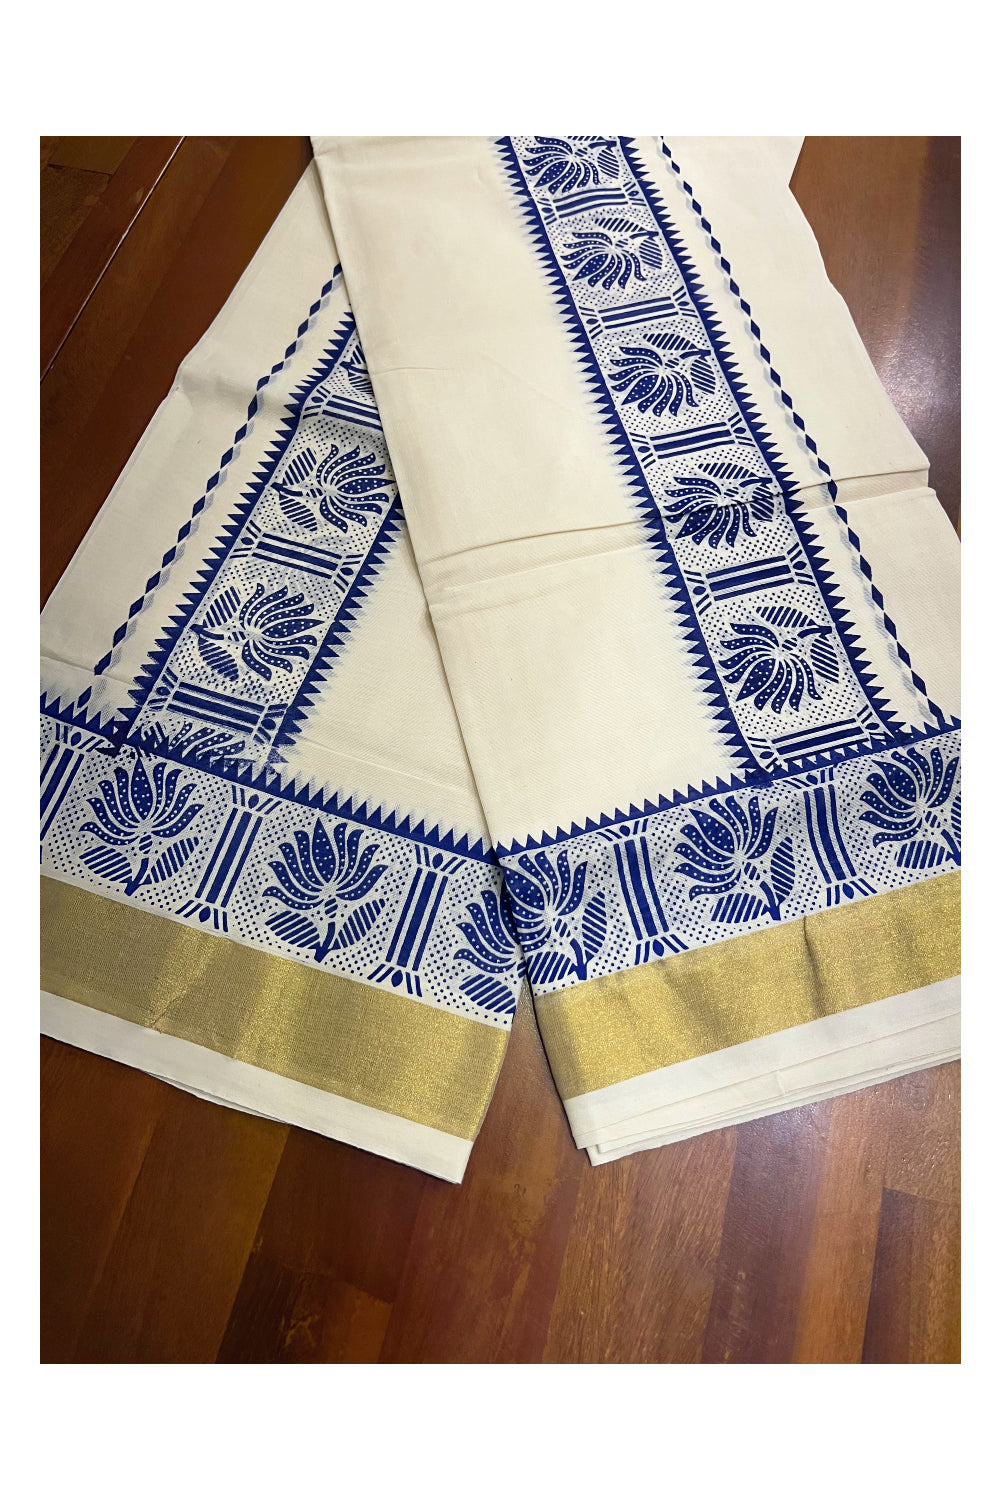 Kerala Cotton Single Set Mundu (Mundum Neriyathum) with Blue Block Prints and Kasavu Border - 2.80Mtrs